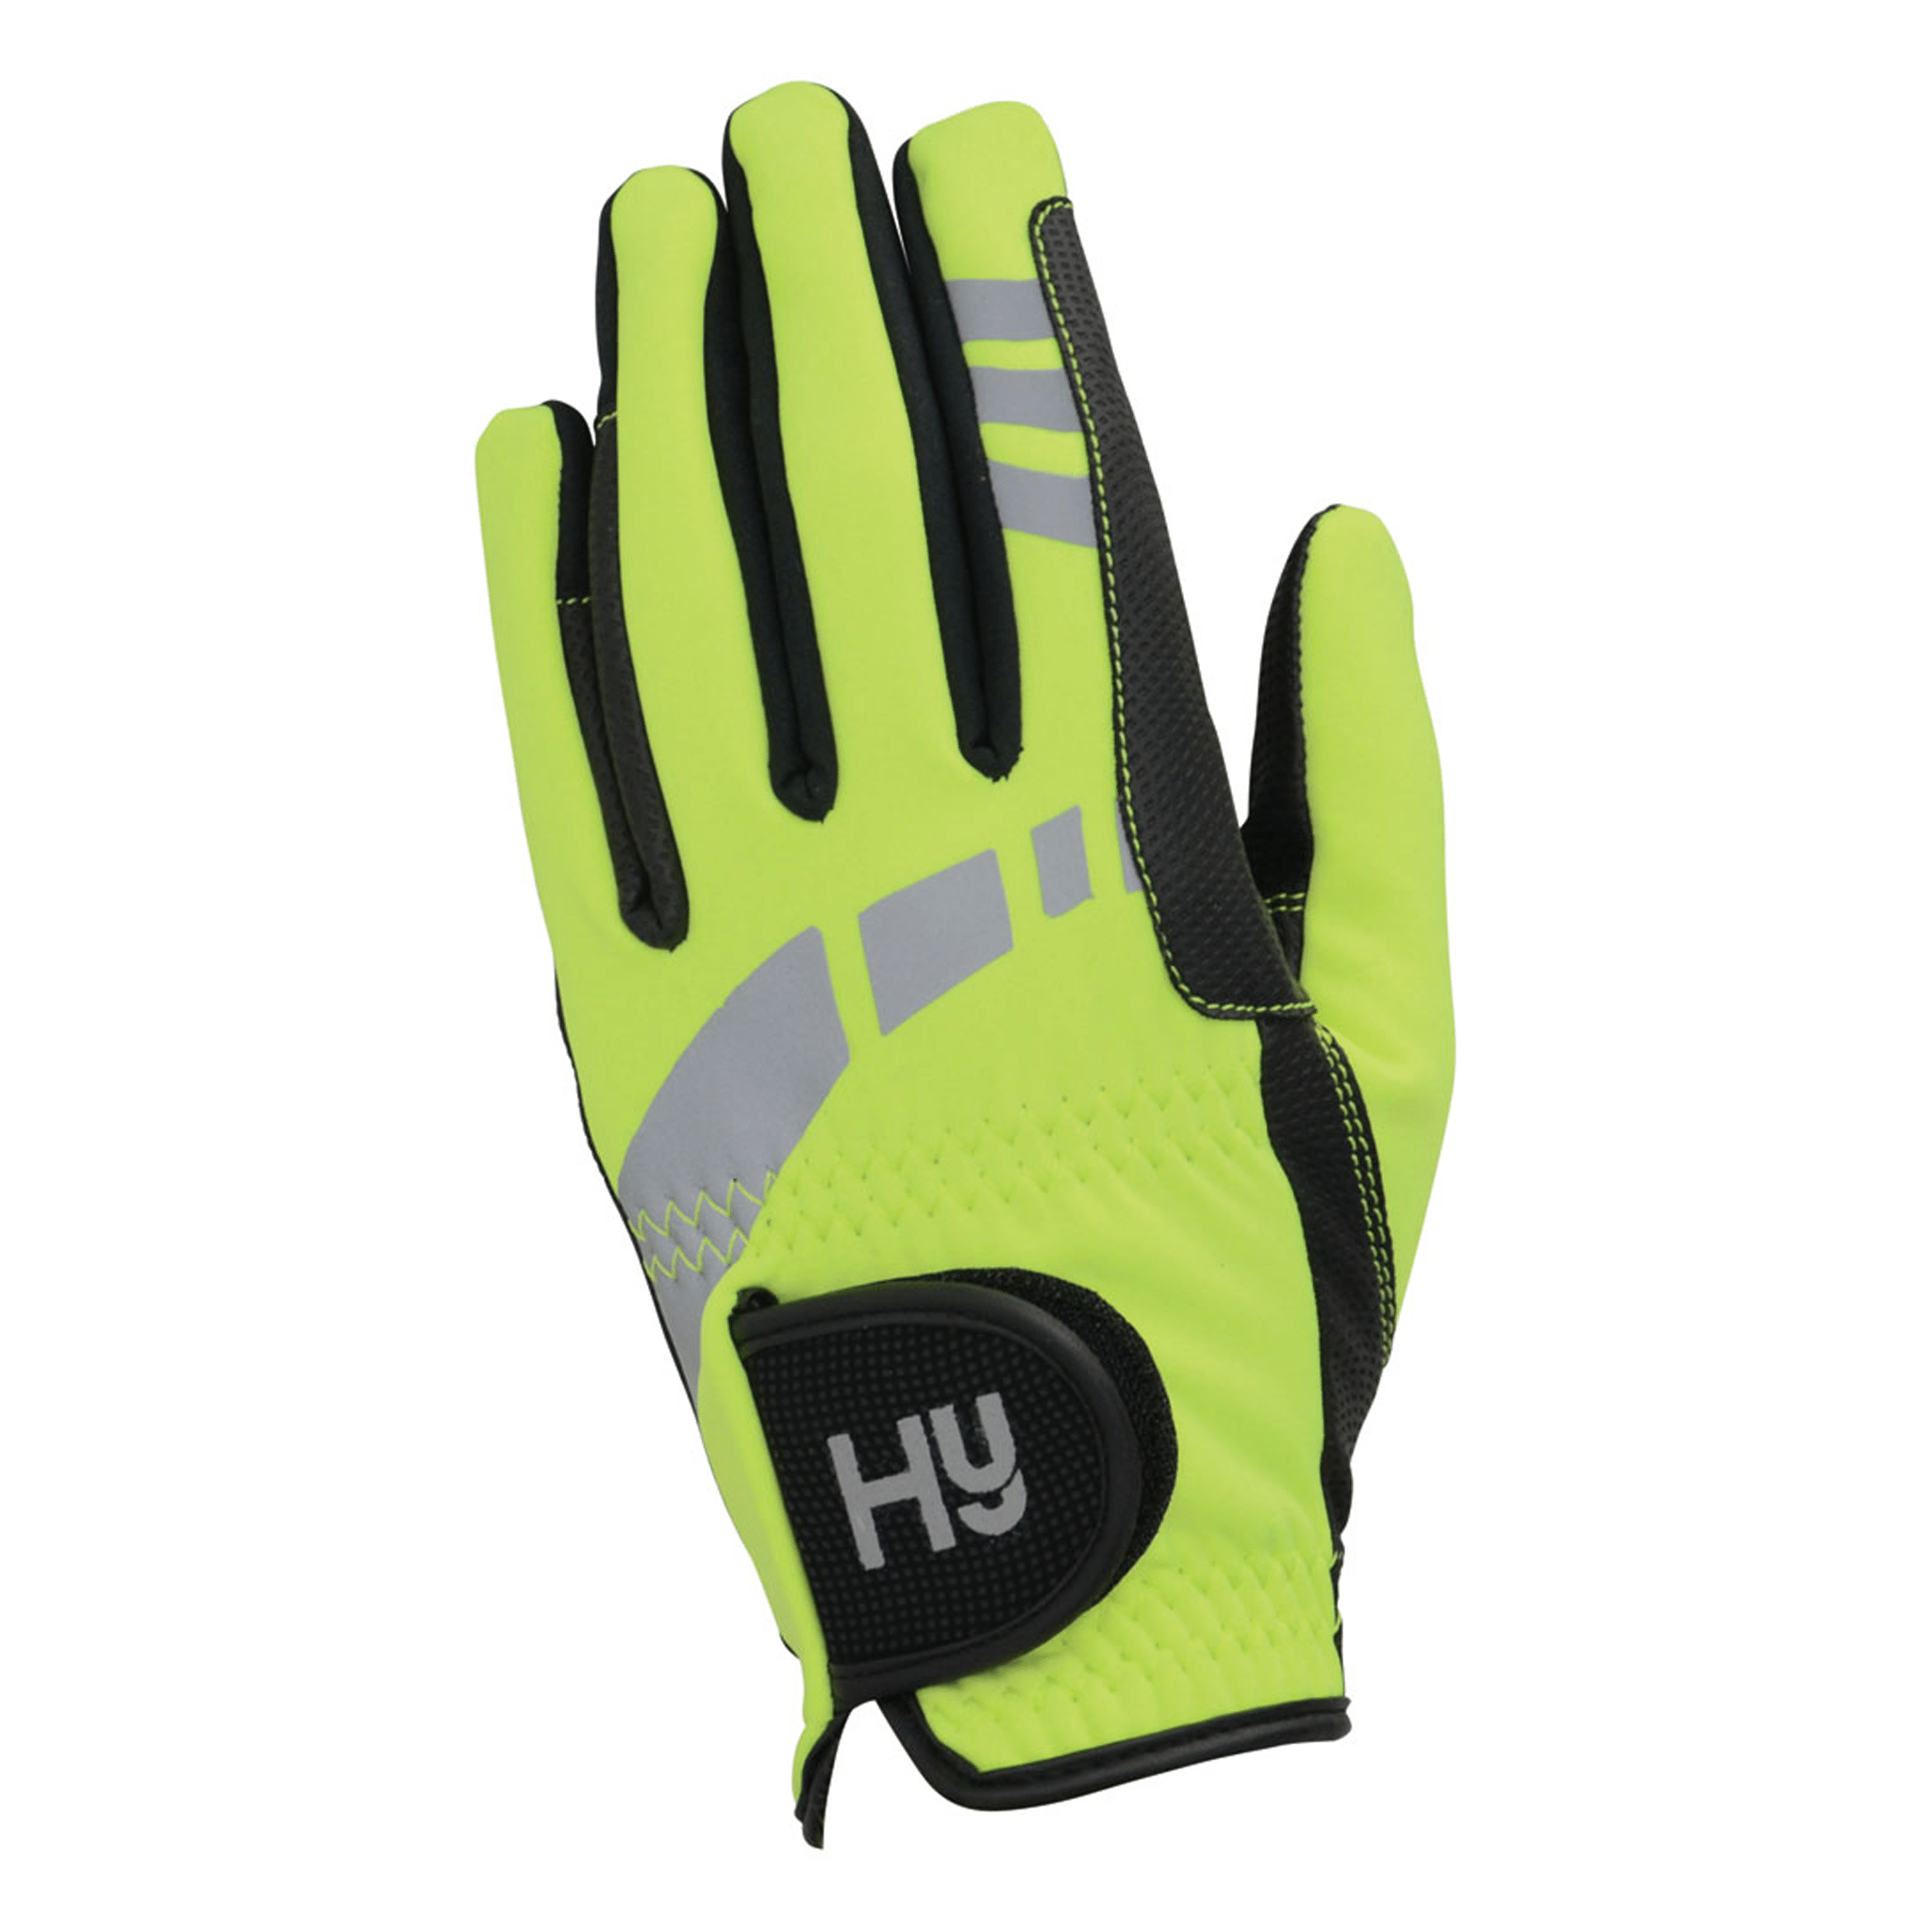 15450 Hy5 Children's Extreme Reflective Softshell Gloves yellow hi-viz